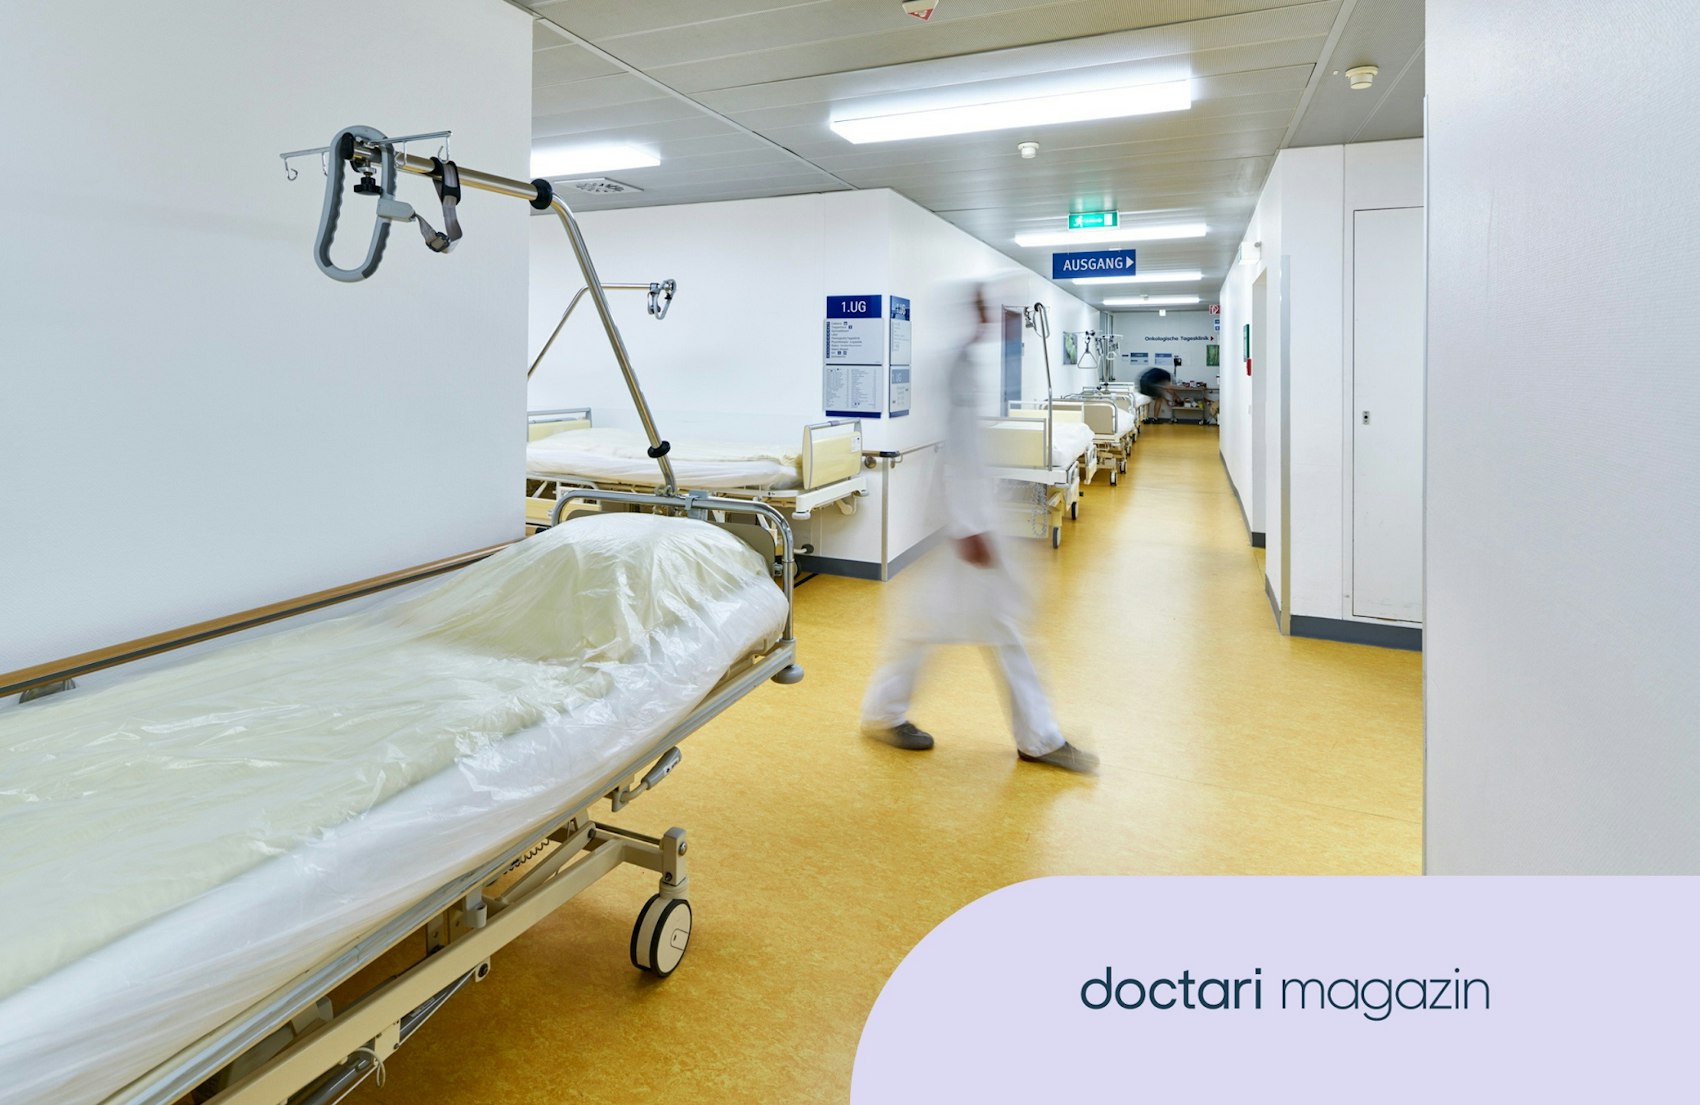 Eine verschwommen zu sehende Person im weißen Kittel läuft über einen ansonsten leeren Krankenhausflur